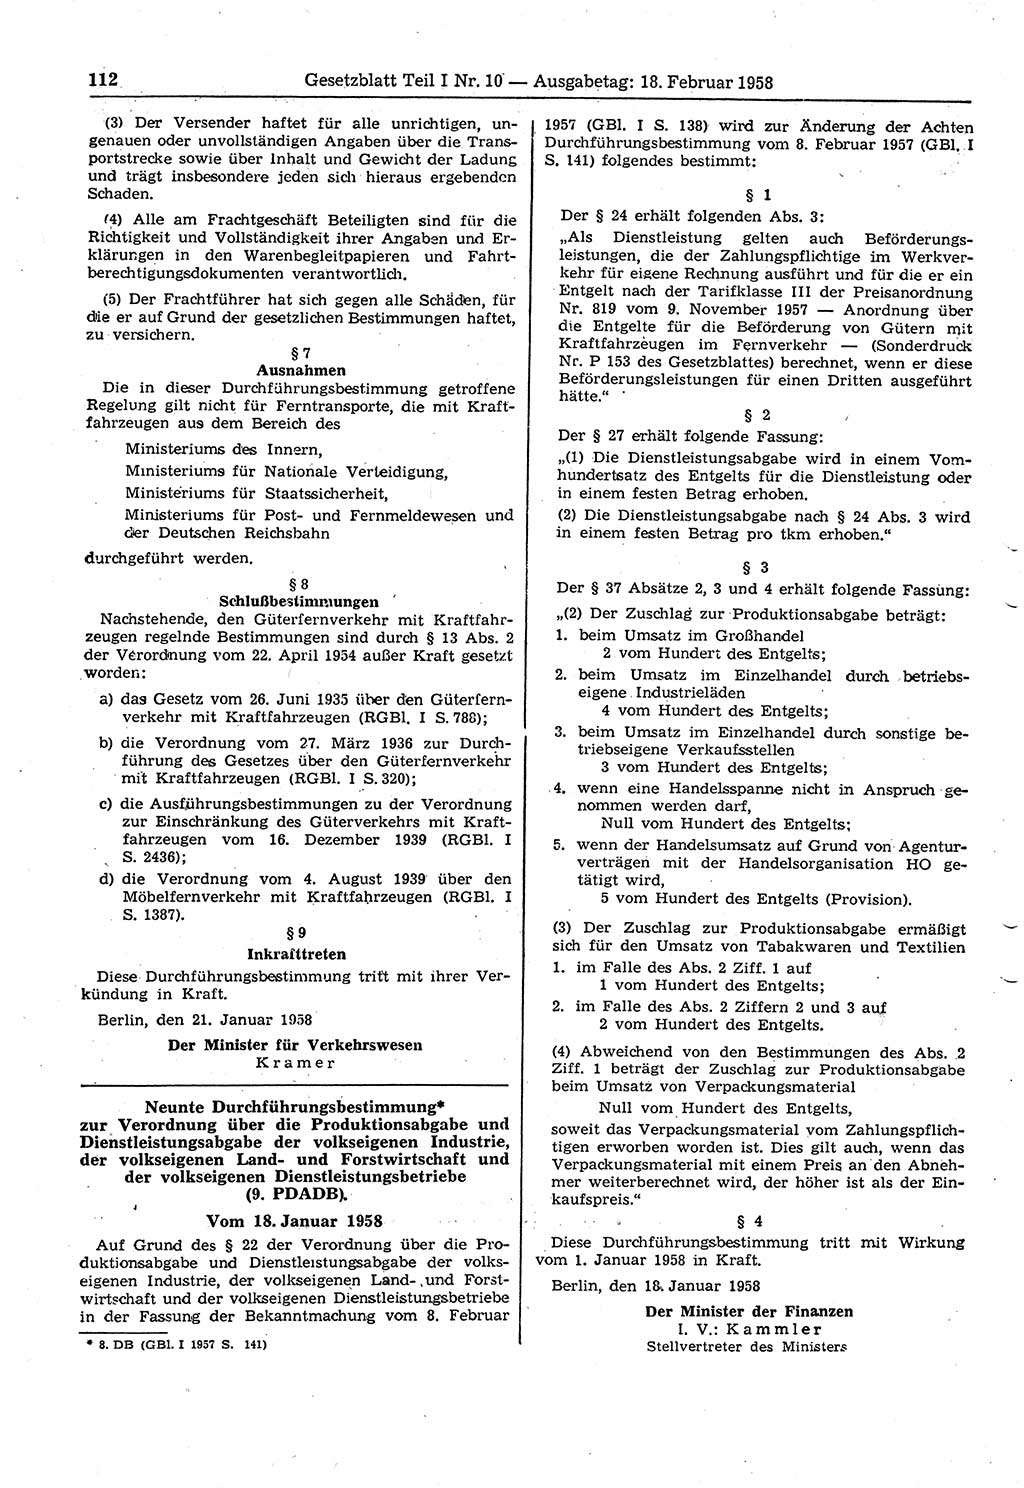 Gesetzblatt (GBl.) der Deutschen Demokratischen Republik (DDR) Teil Ⅰ 1958, Seite 112 (GBl. DDR Ⅰ 1958, S. 112)